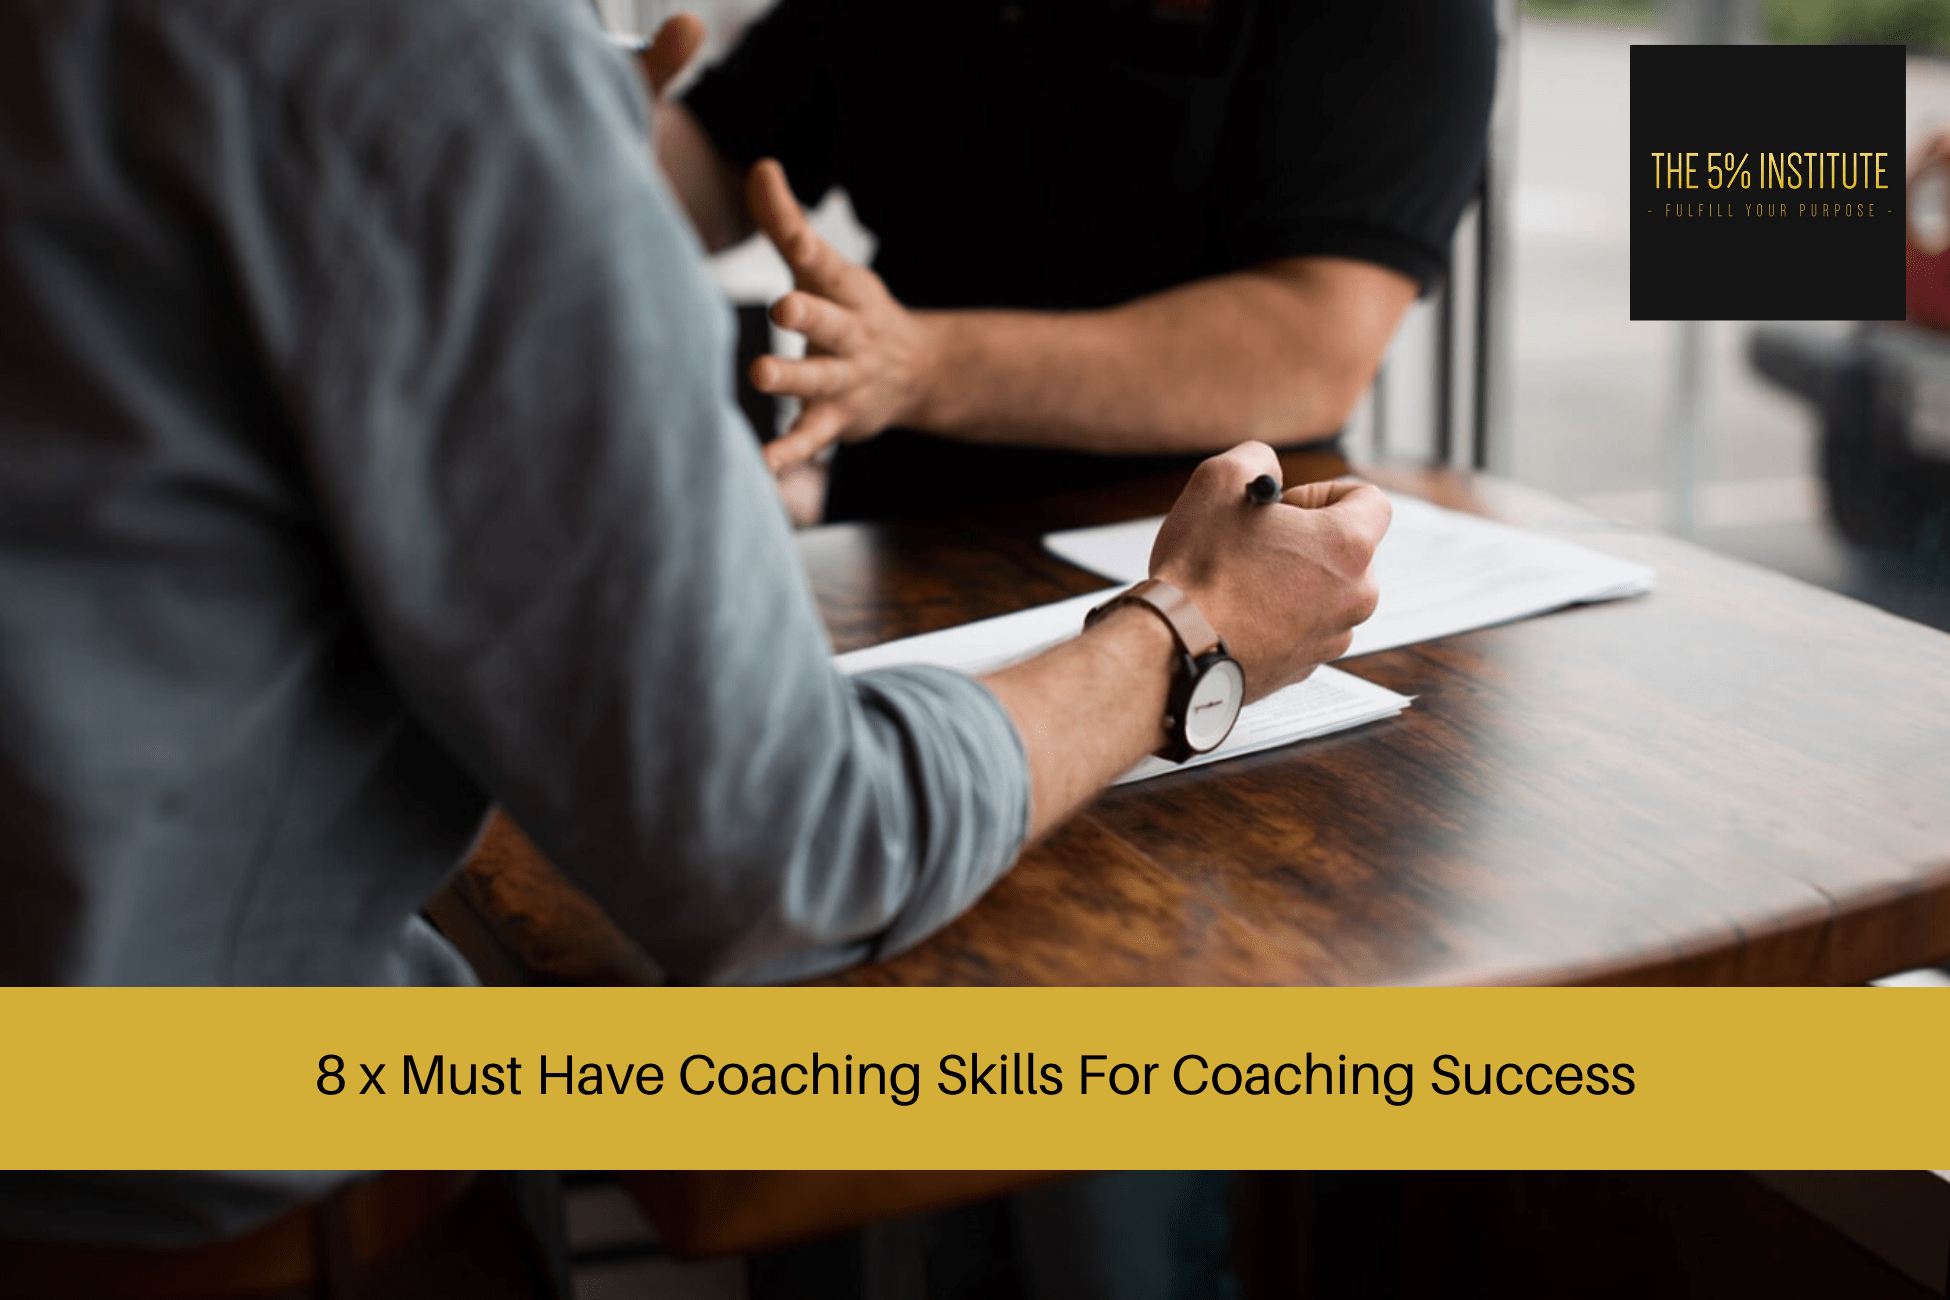 coaching skills